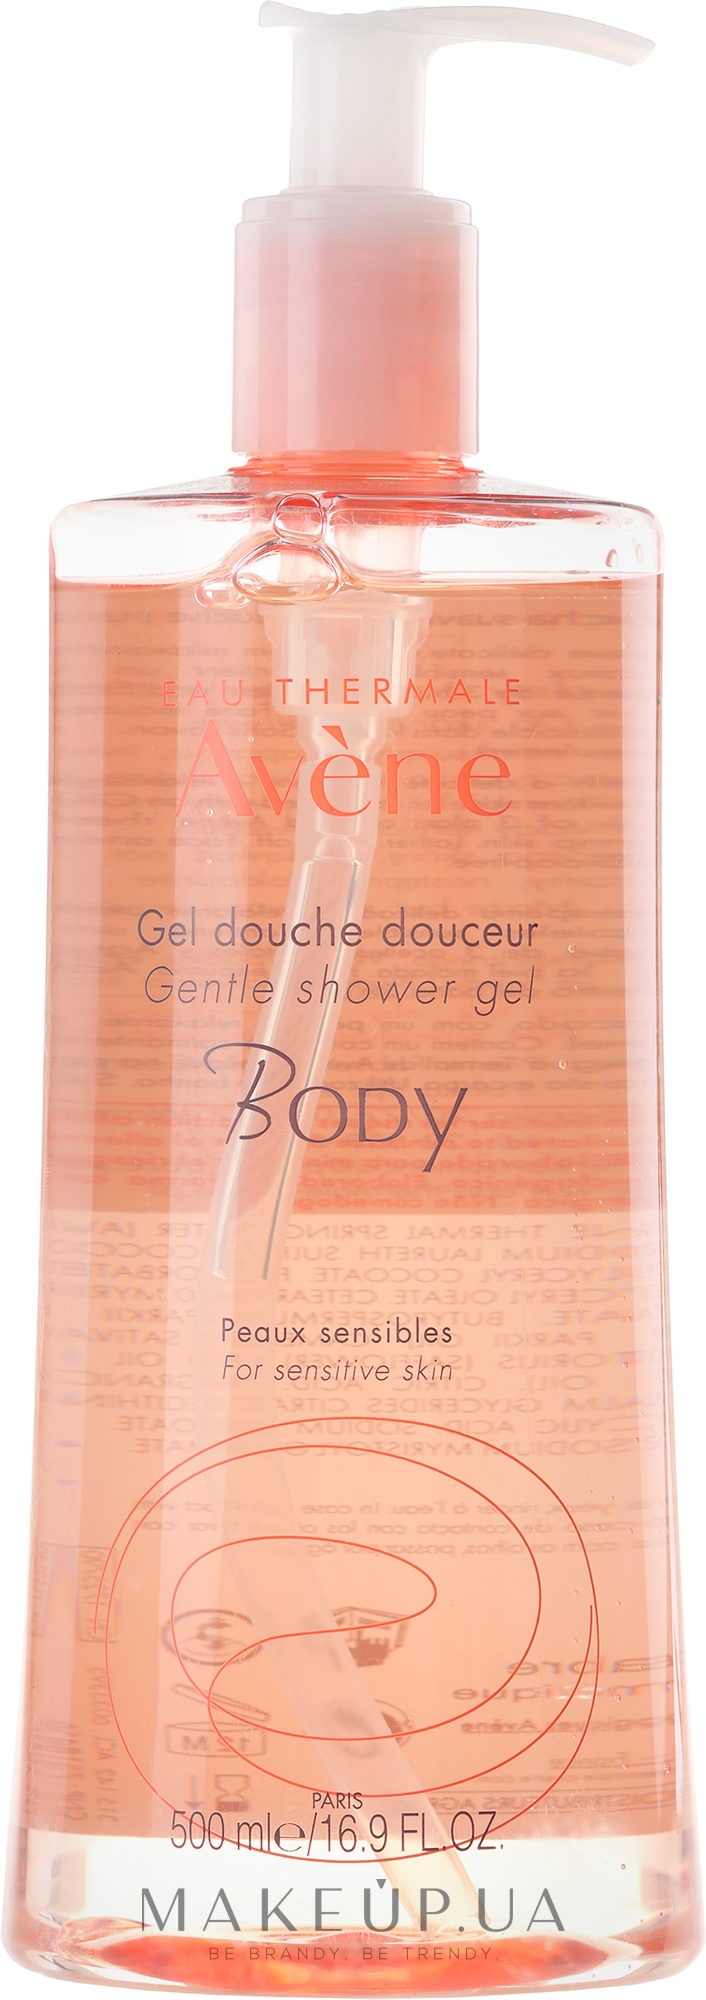 Нежный гель для душа для чувствительной кожи - Avene Body Gentle Shower Gel — фото 500ml